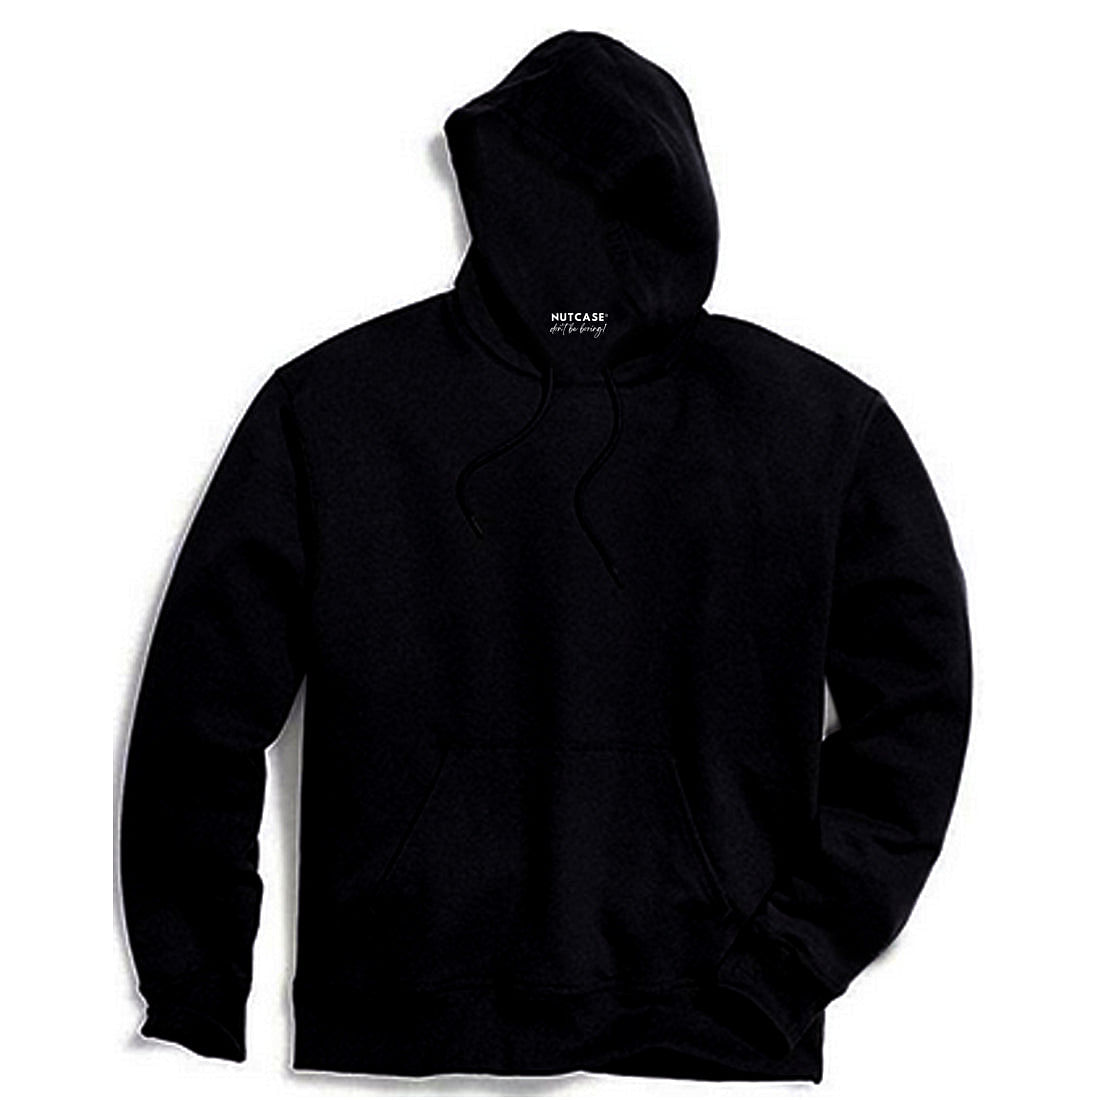 Nutcase Customized Black Hoodie hoodies for Men Women-Add Text Nutcase